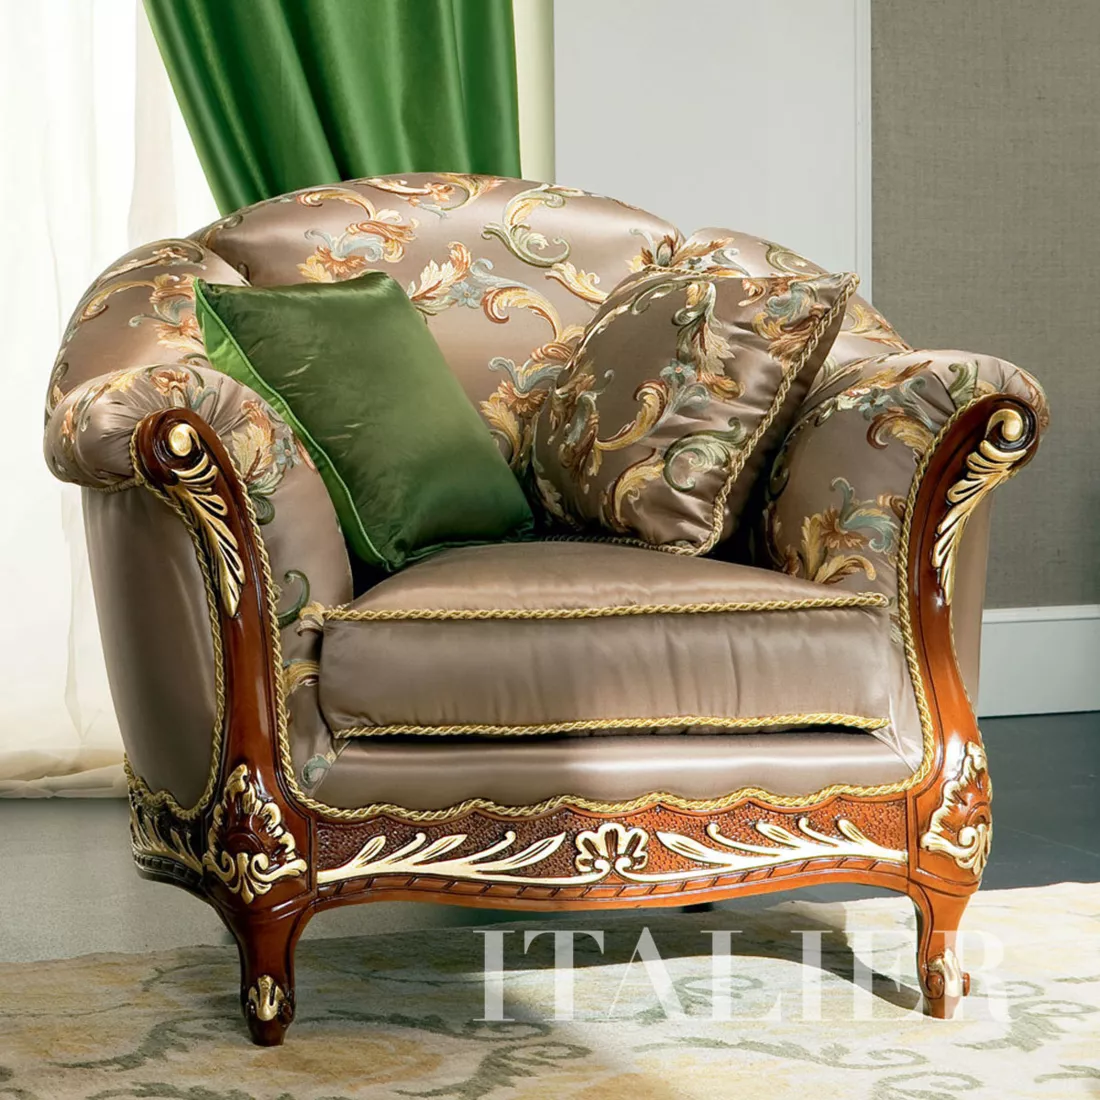 Luxury-living-room-upholstered-armchair-Bella-Vita-collection-Modenese-Gastonezjhtgdrfs